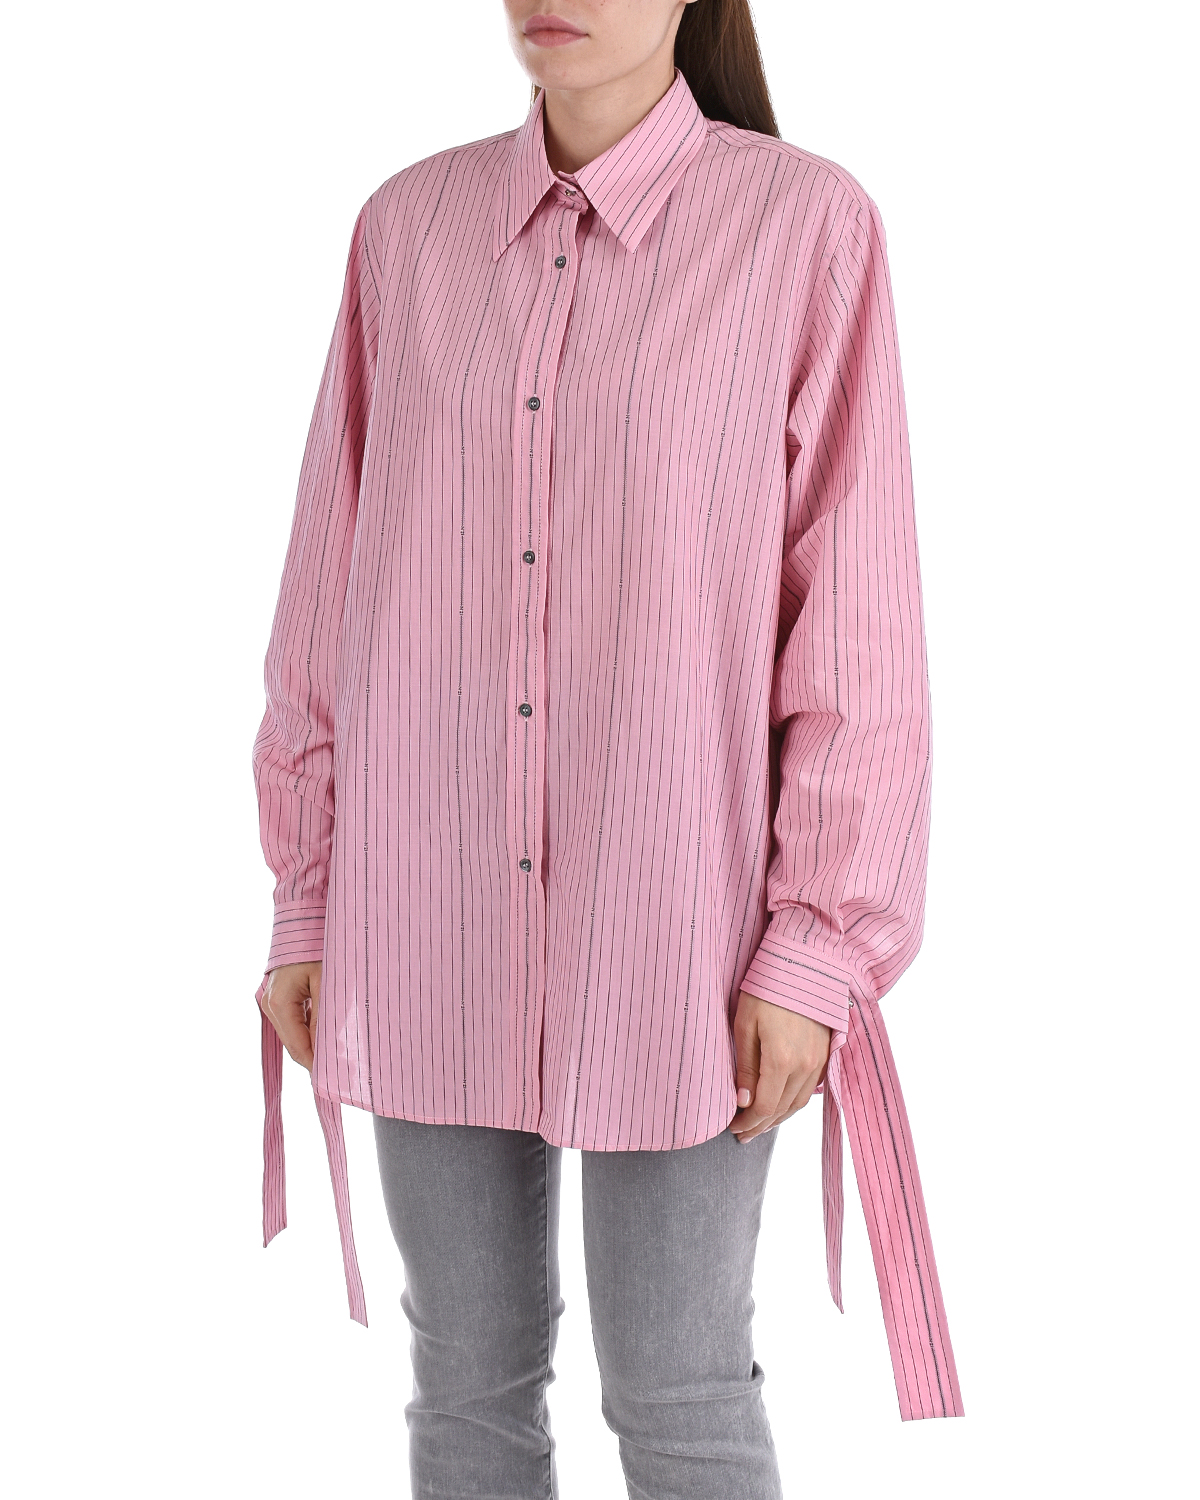 Розовая рубашка в полоску. Рубашка no21 красный. Розовая рубашка. Светло розовая рубашка. Светло розовая рубашка женская.